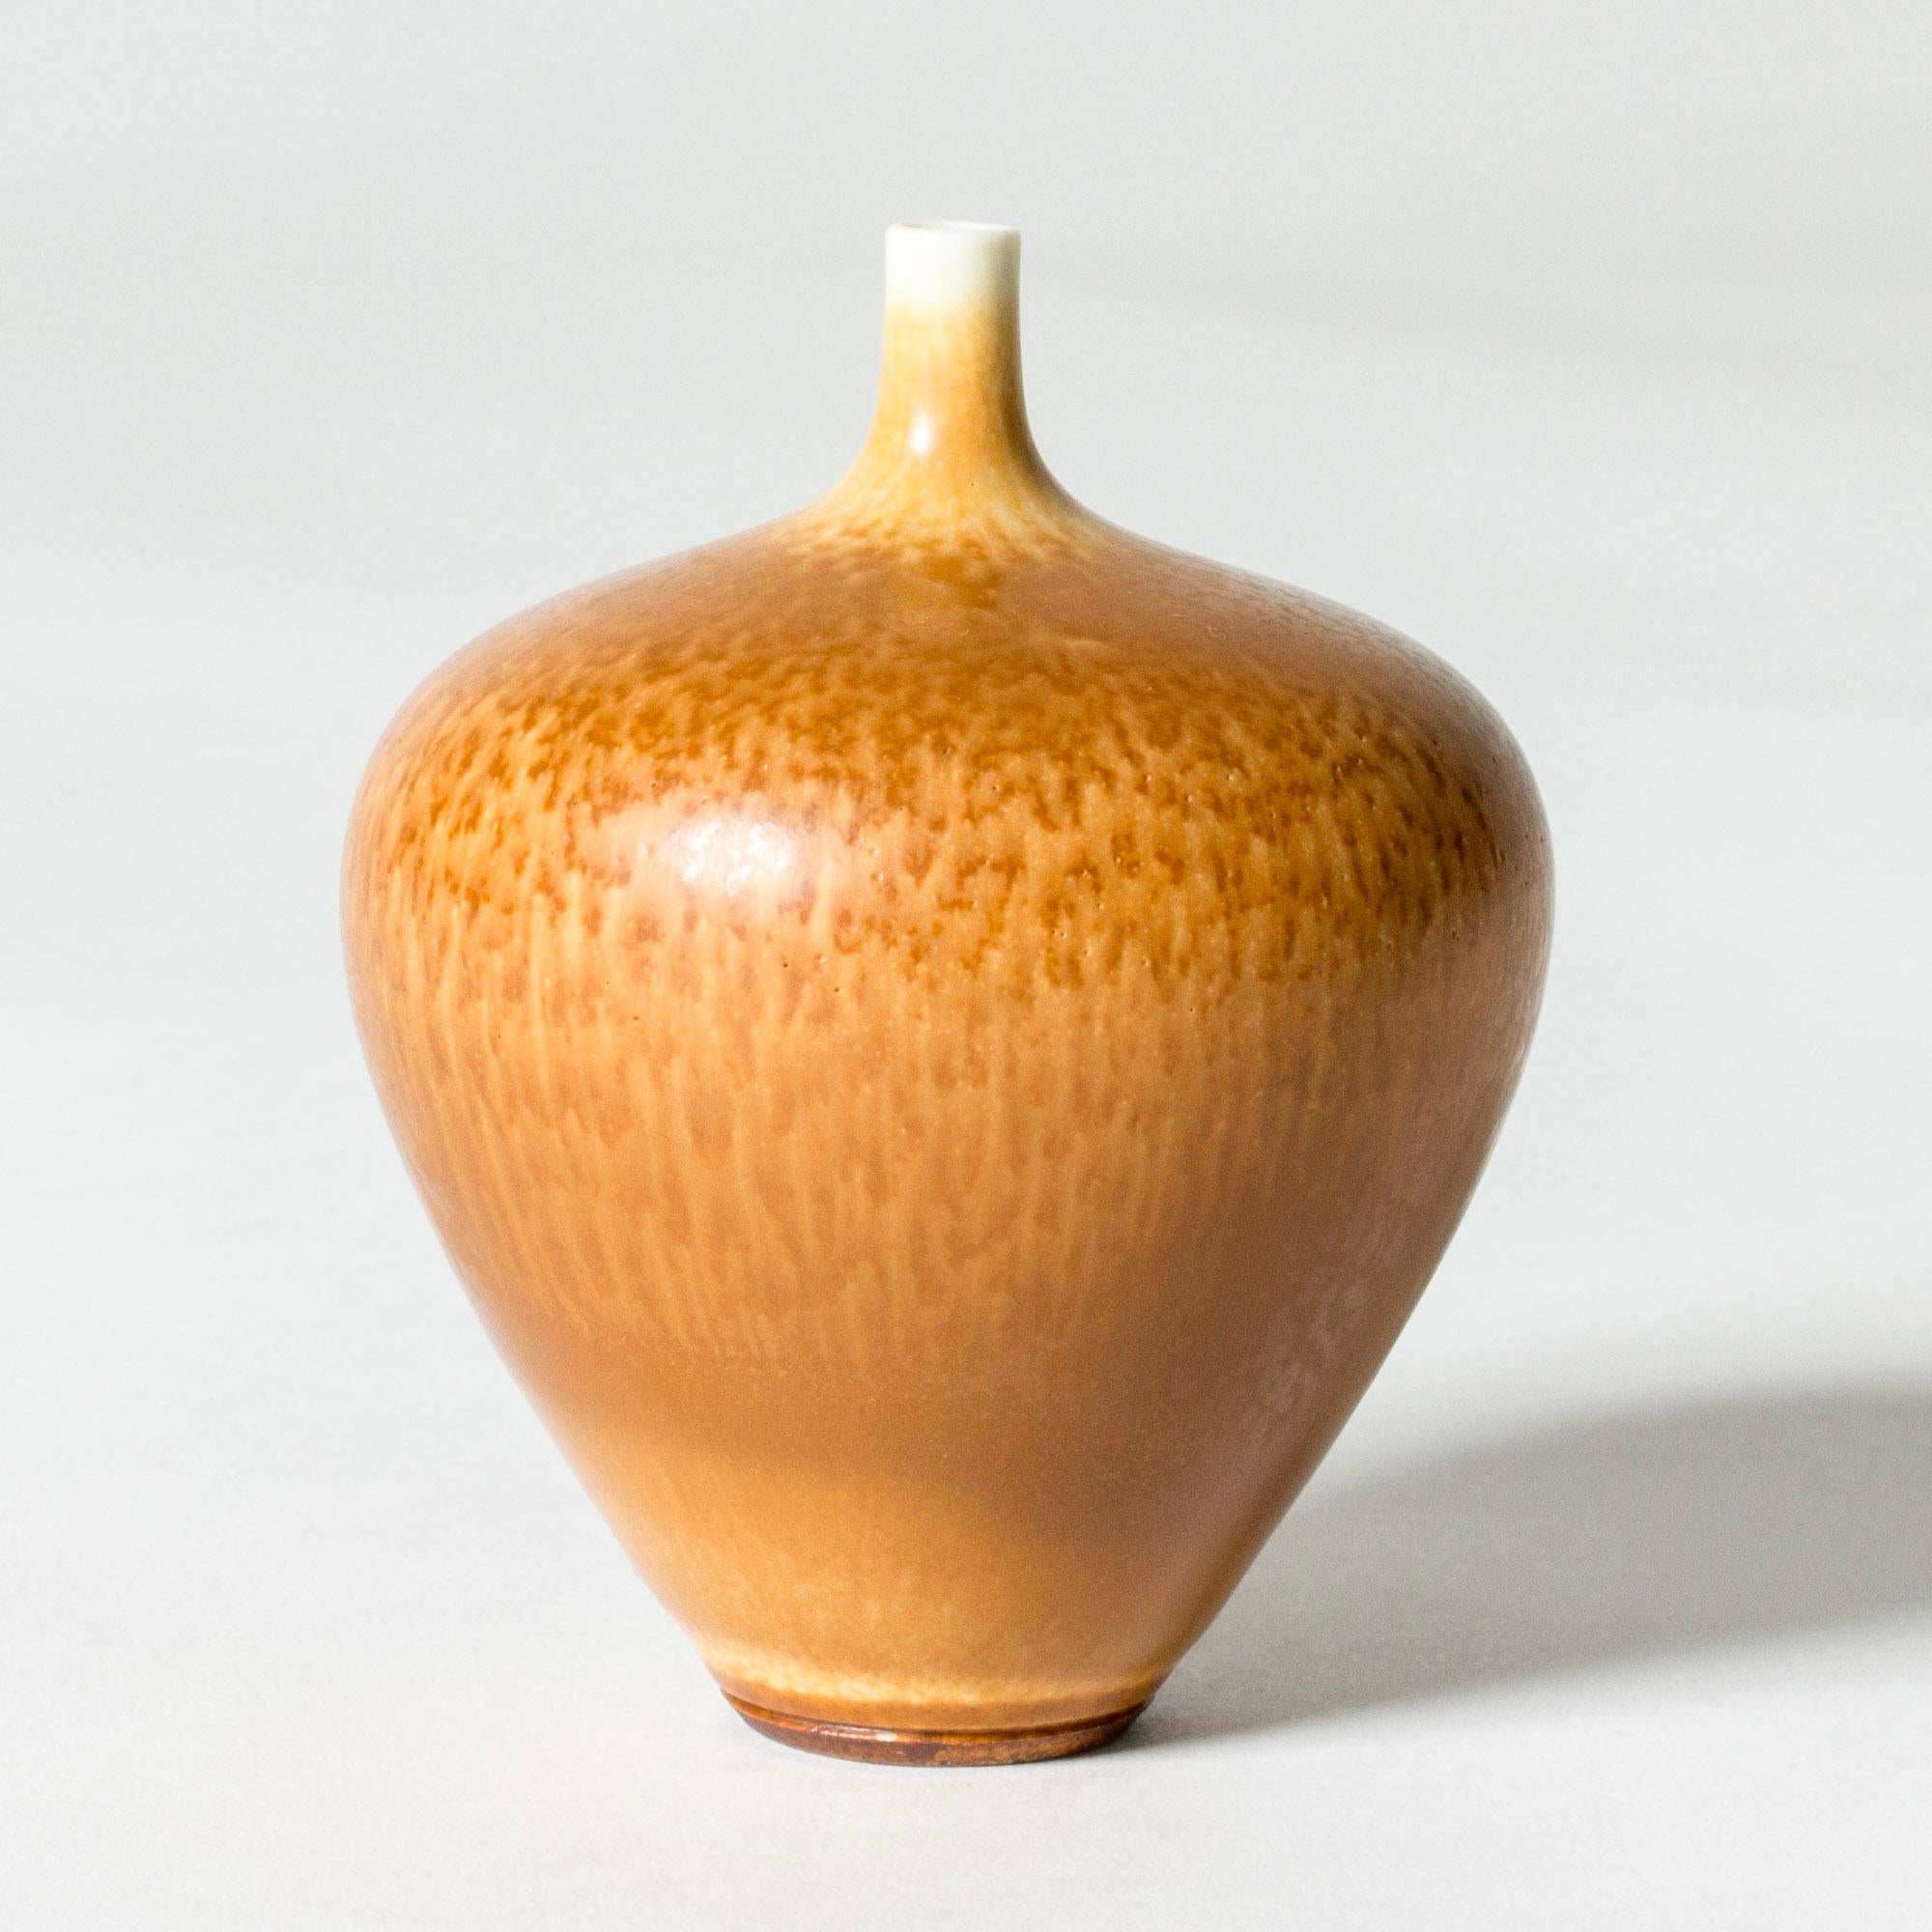 Joli vase miniature en grès de Berndt Friberg, en forme de pomme ample avec un col fin. Décoré d'une glaçure de fourrure de lièvre ocre chaude.

Berndt Friberg était un céramiste suédois, renommé pour ses vases en grès et ses récipients pour